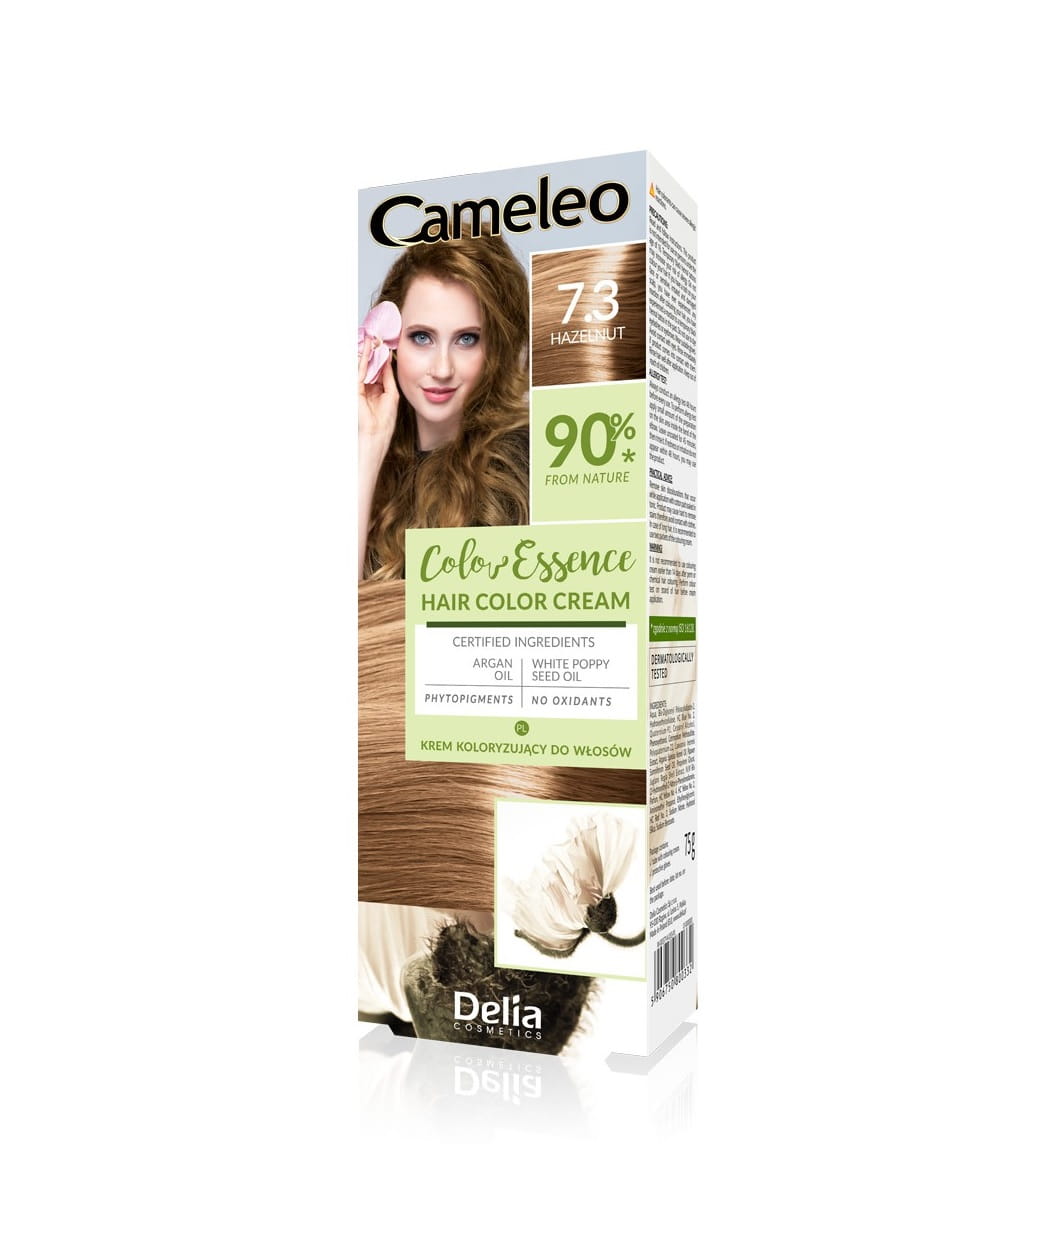 Delia Cameleo Krem koloryzujący do włosów 7.3 Hazelnut 75 g